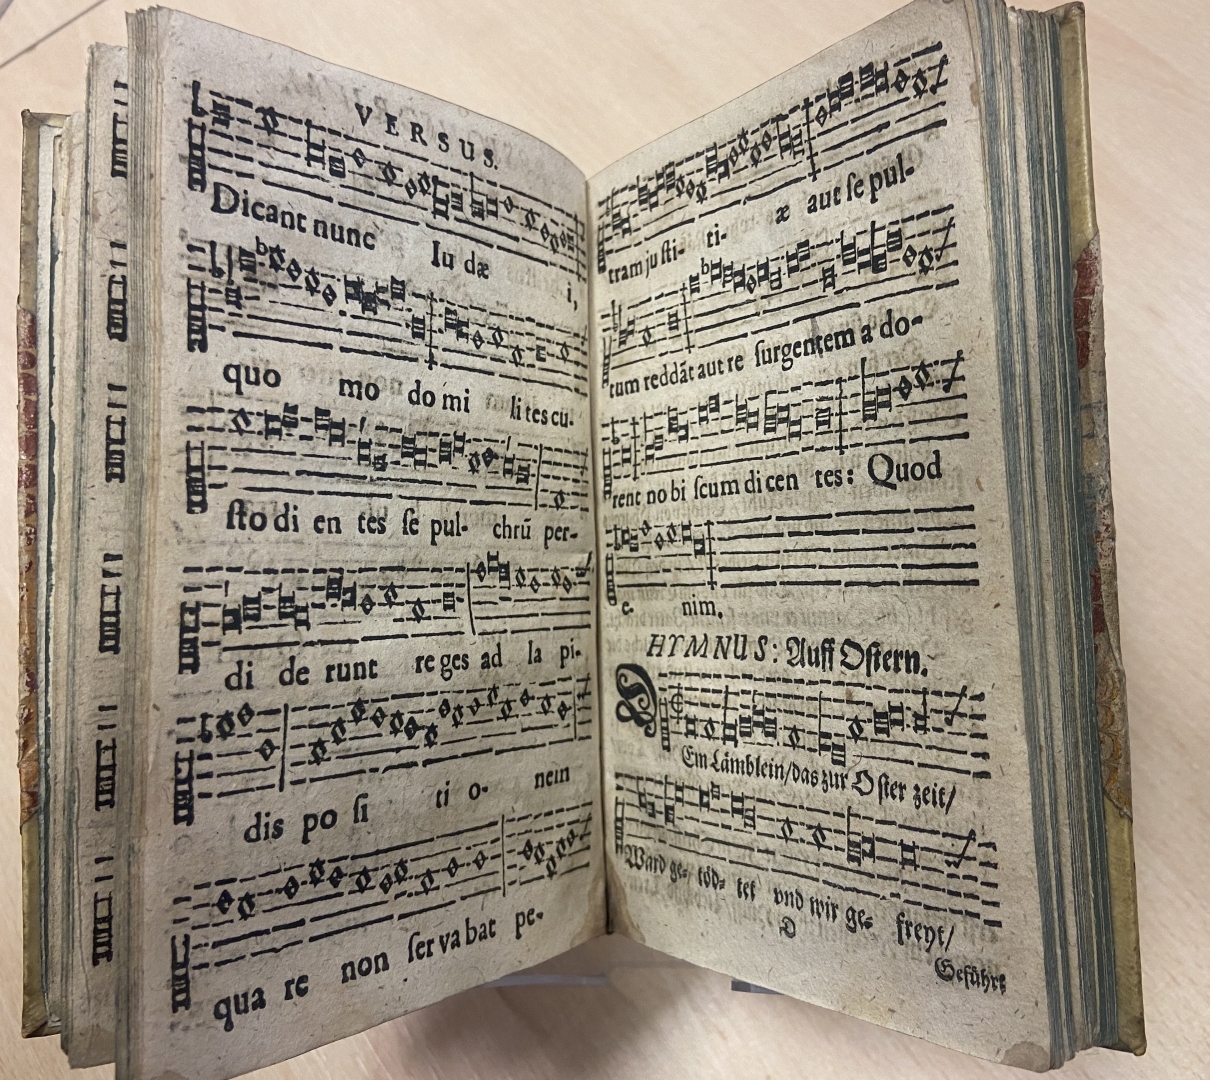 LNA Speciālajā bibliotēkā glabājas unikāls izdevums “Antiphonae, responsoria, hymni …”